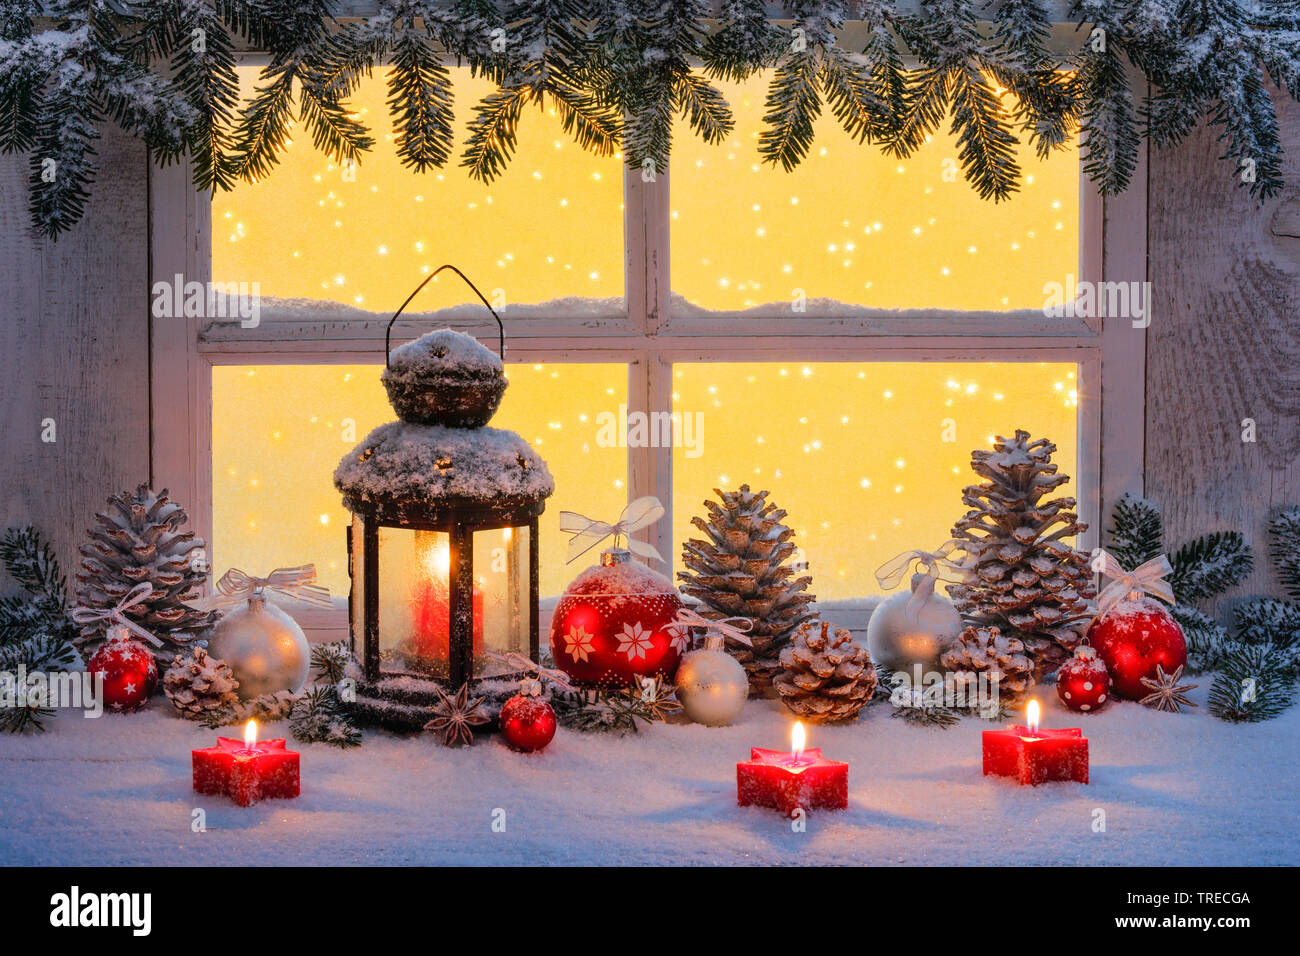 lantern with christmas decoration on a ledge, Switzerland Stock Photo